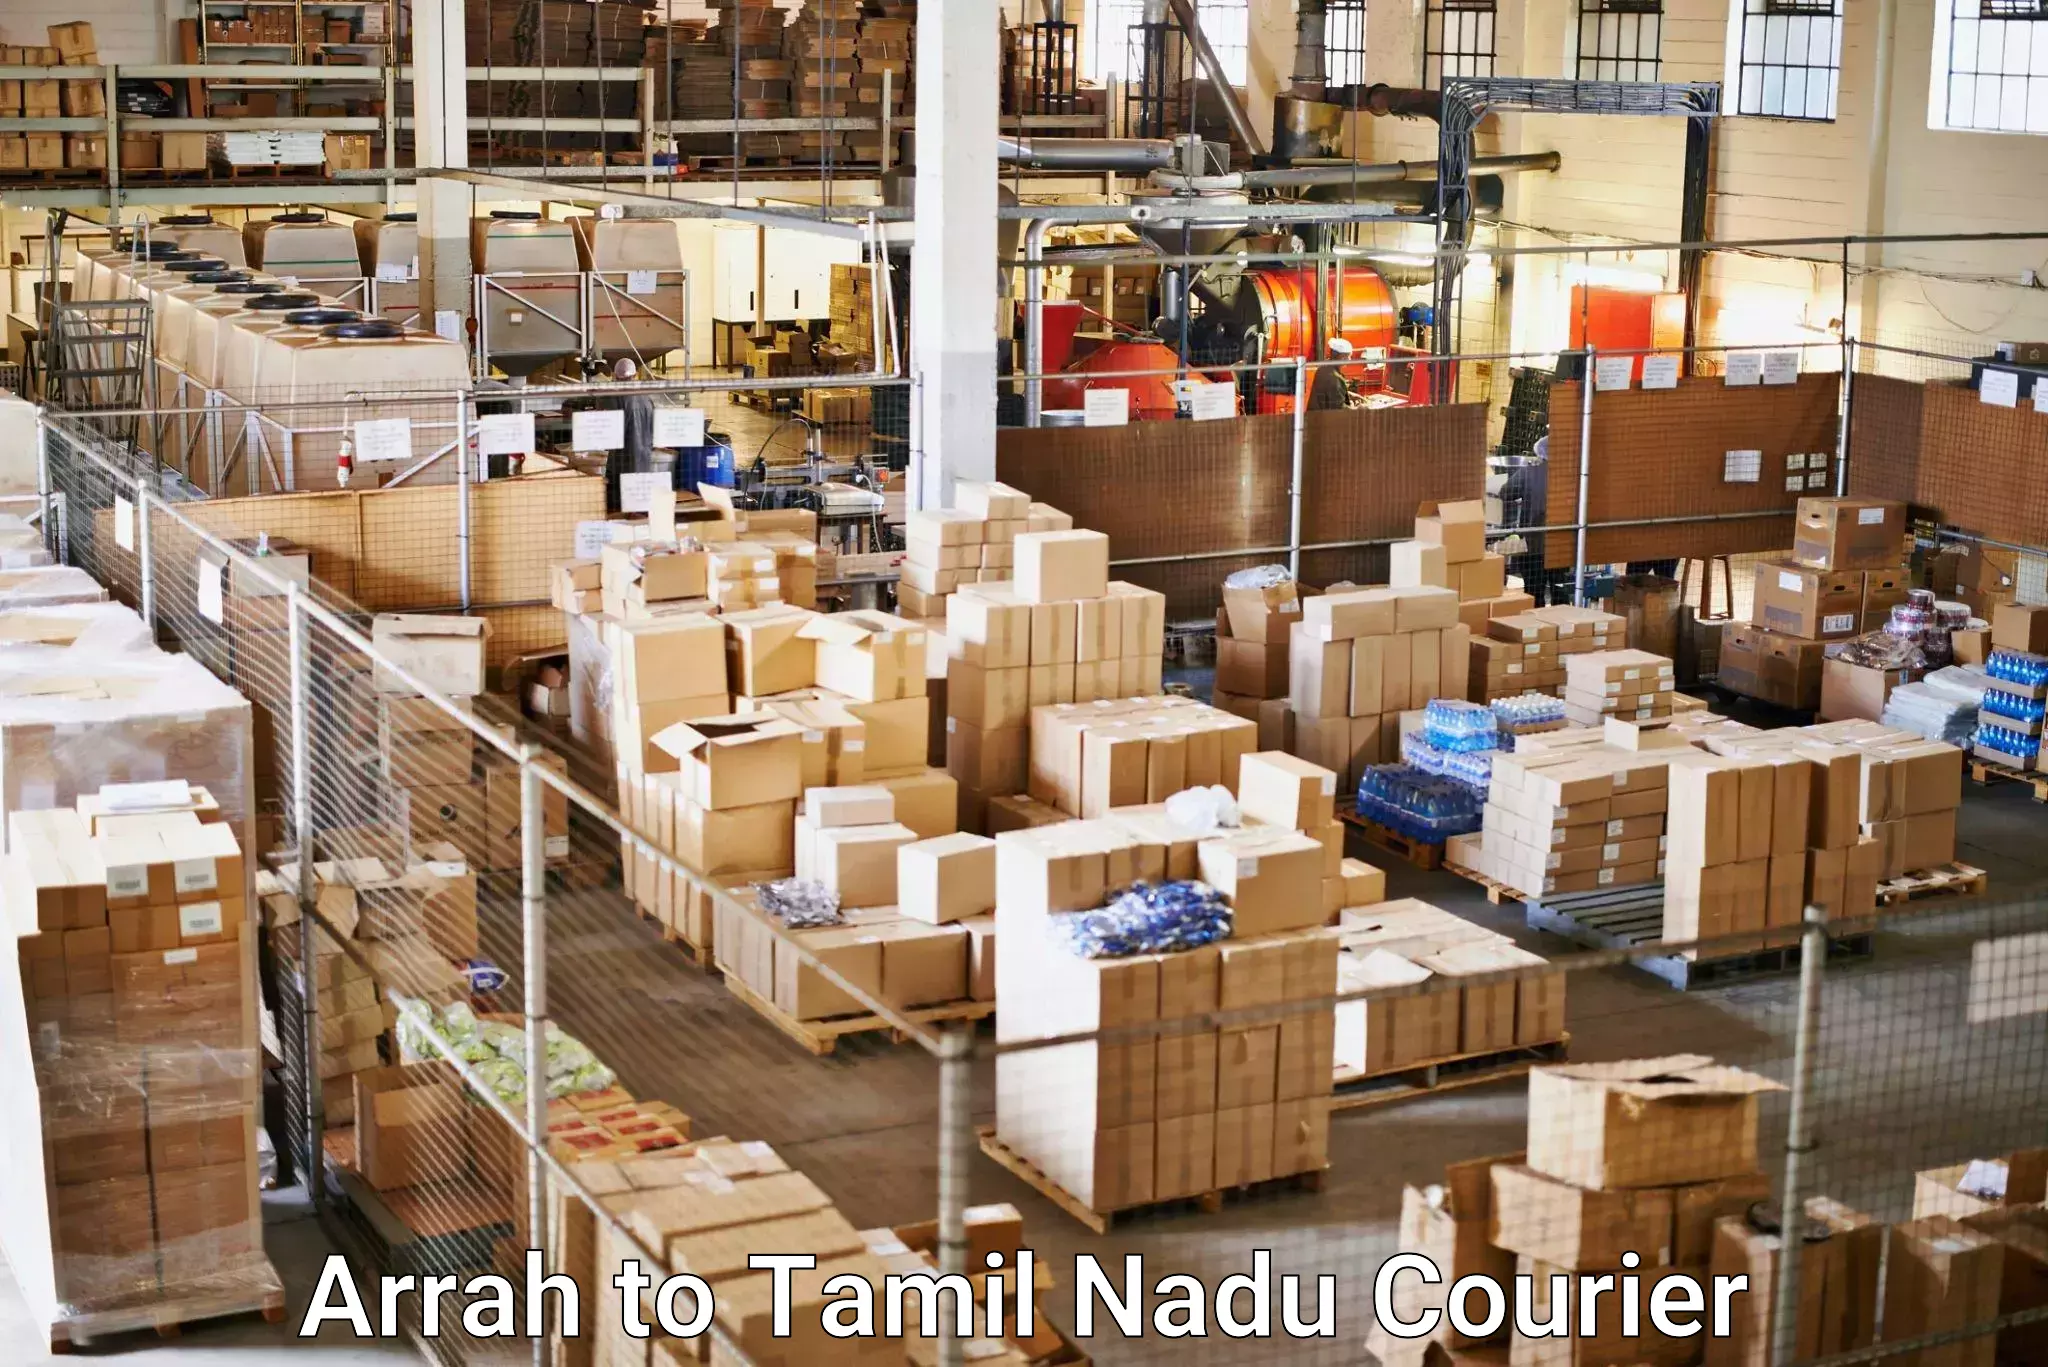 Customer-centric shipping in Arrah to Ambur